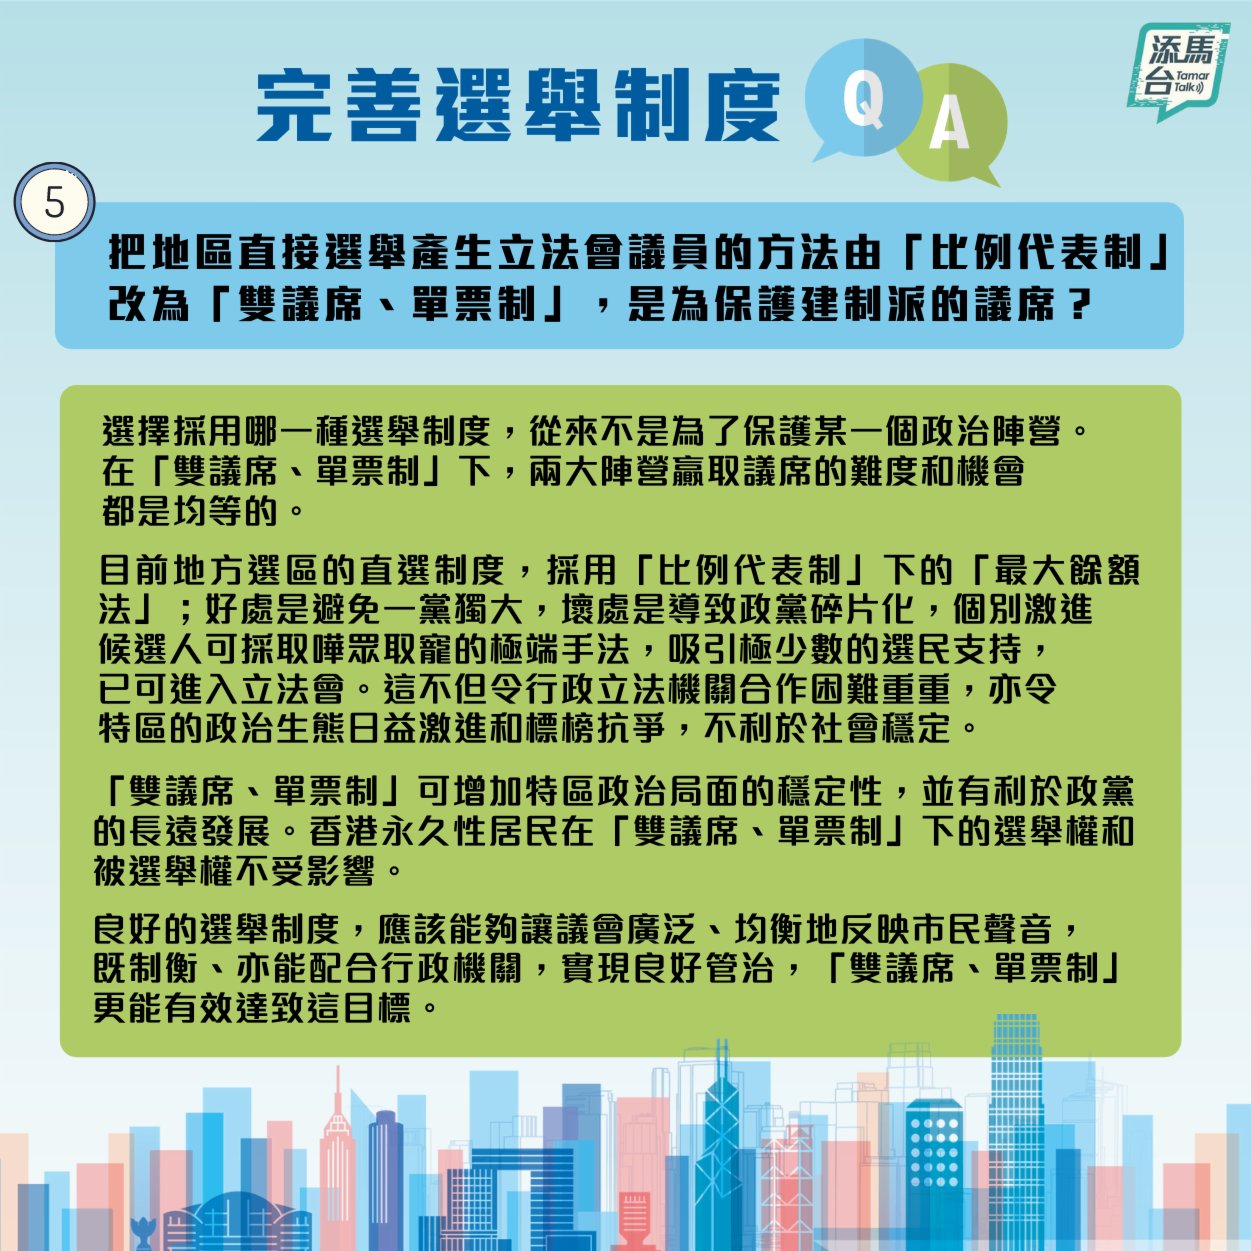 特區政府近日在社交媒體上發文製圖，系統回答了怎樣可以擴大香港均衡有序的政治參與，令立法會有更廣泛的代表性？地區直選改為「雙議席、單票制」又有什麼好處？等一系列的問題。